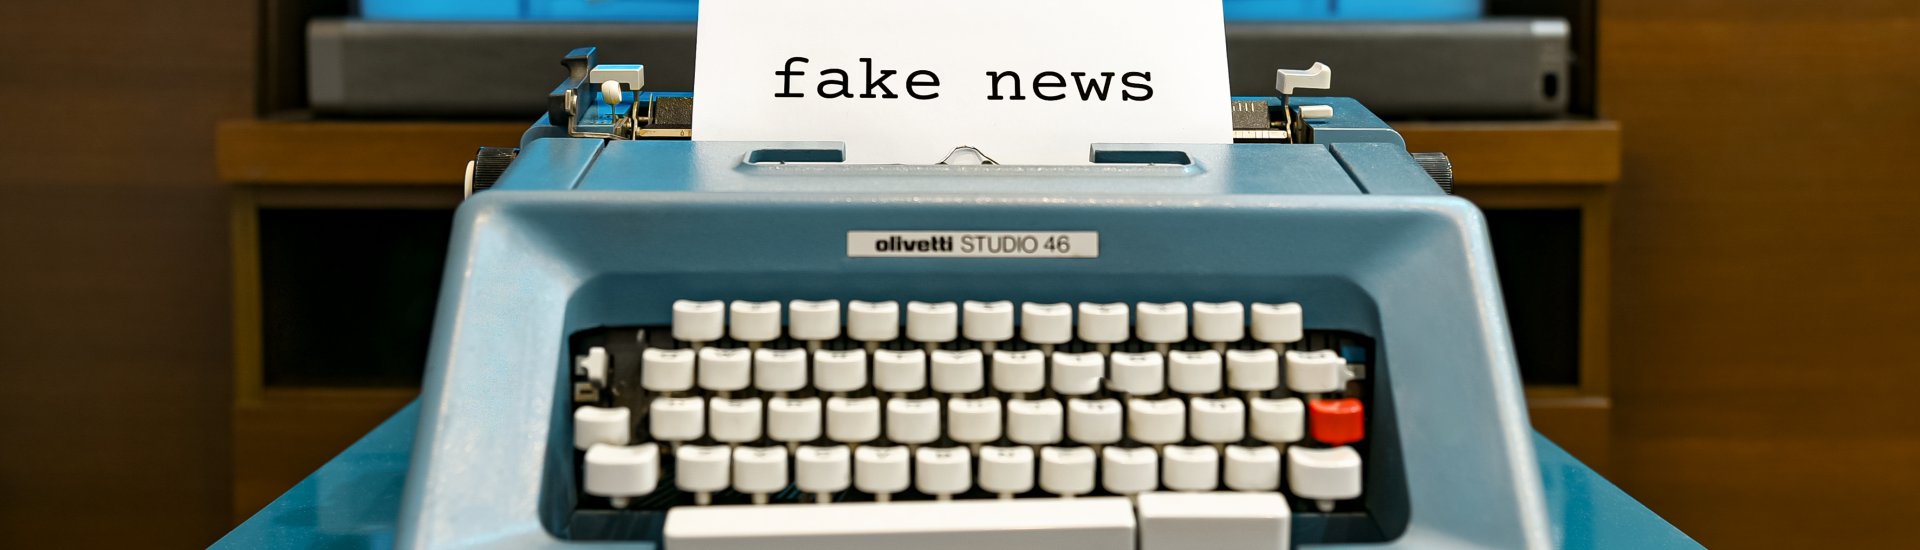 typemachine met een papier erin dat de tekst 'fake news' toont.